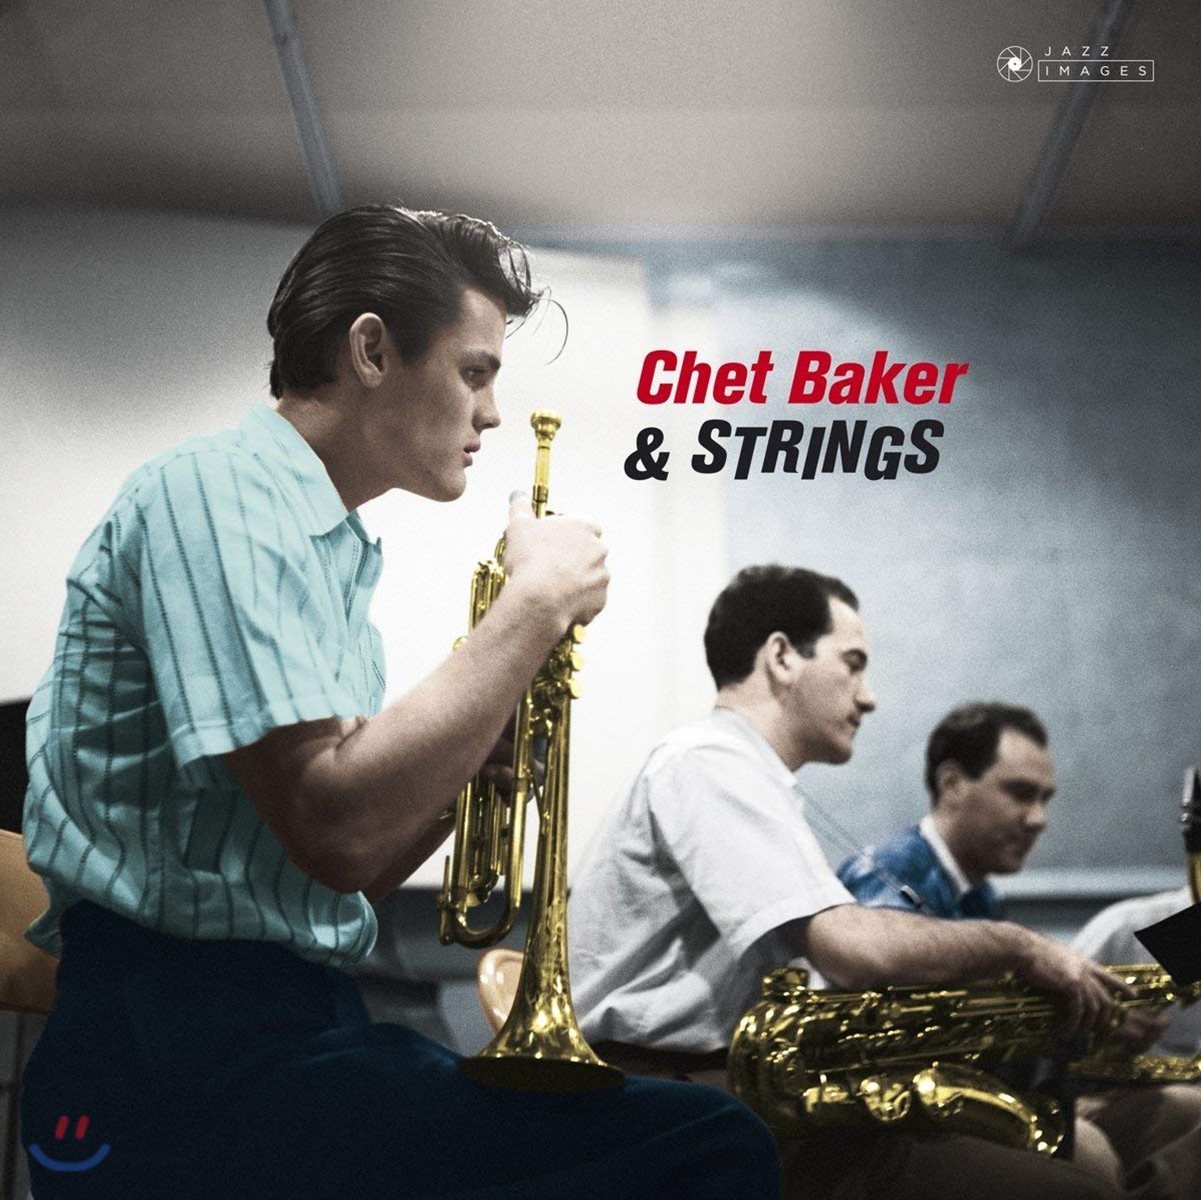 Chet Baker (쳇 베이커) - Chet Baker & Strings [LP]